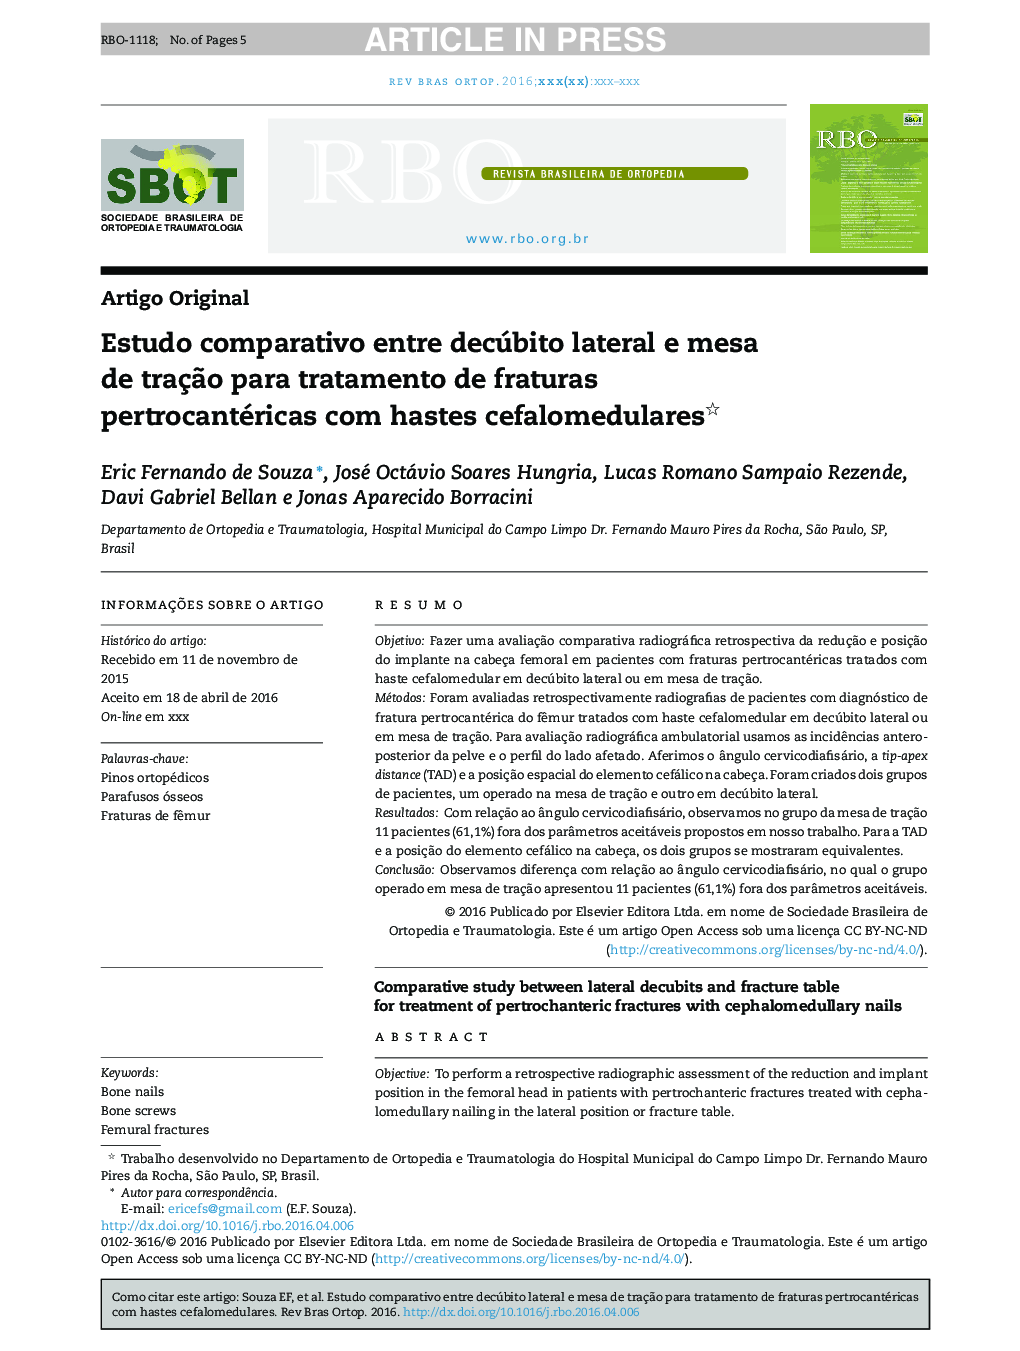 Estudo comparativo entre decúbito lateral e mesa de traçÃ£o para tratamento de fraturas pertrocantéricas com hastes cefalomedulares